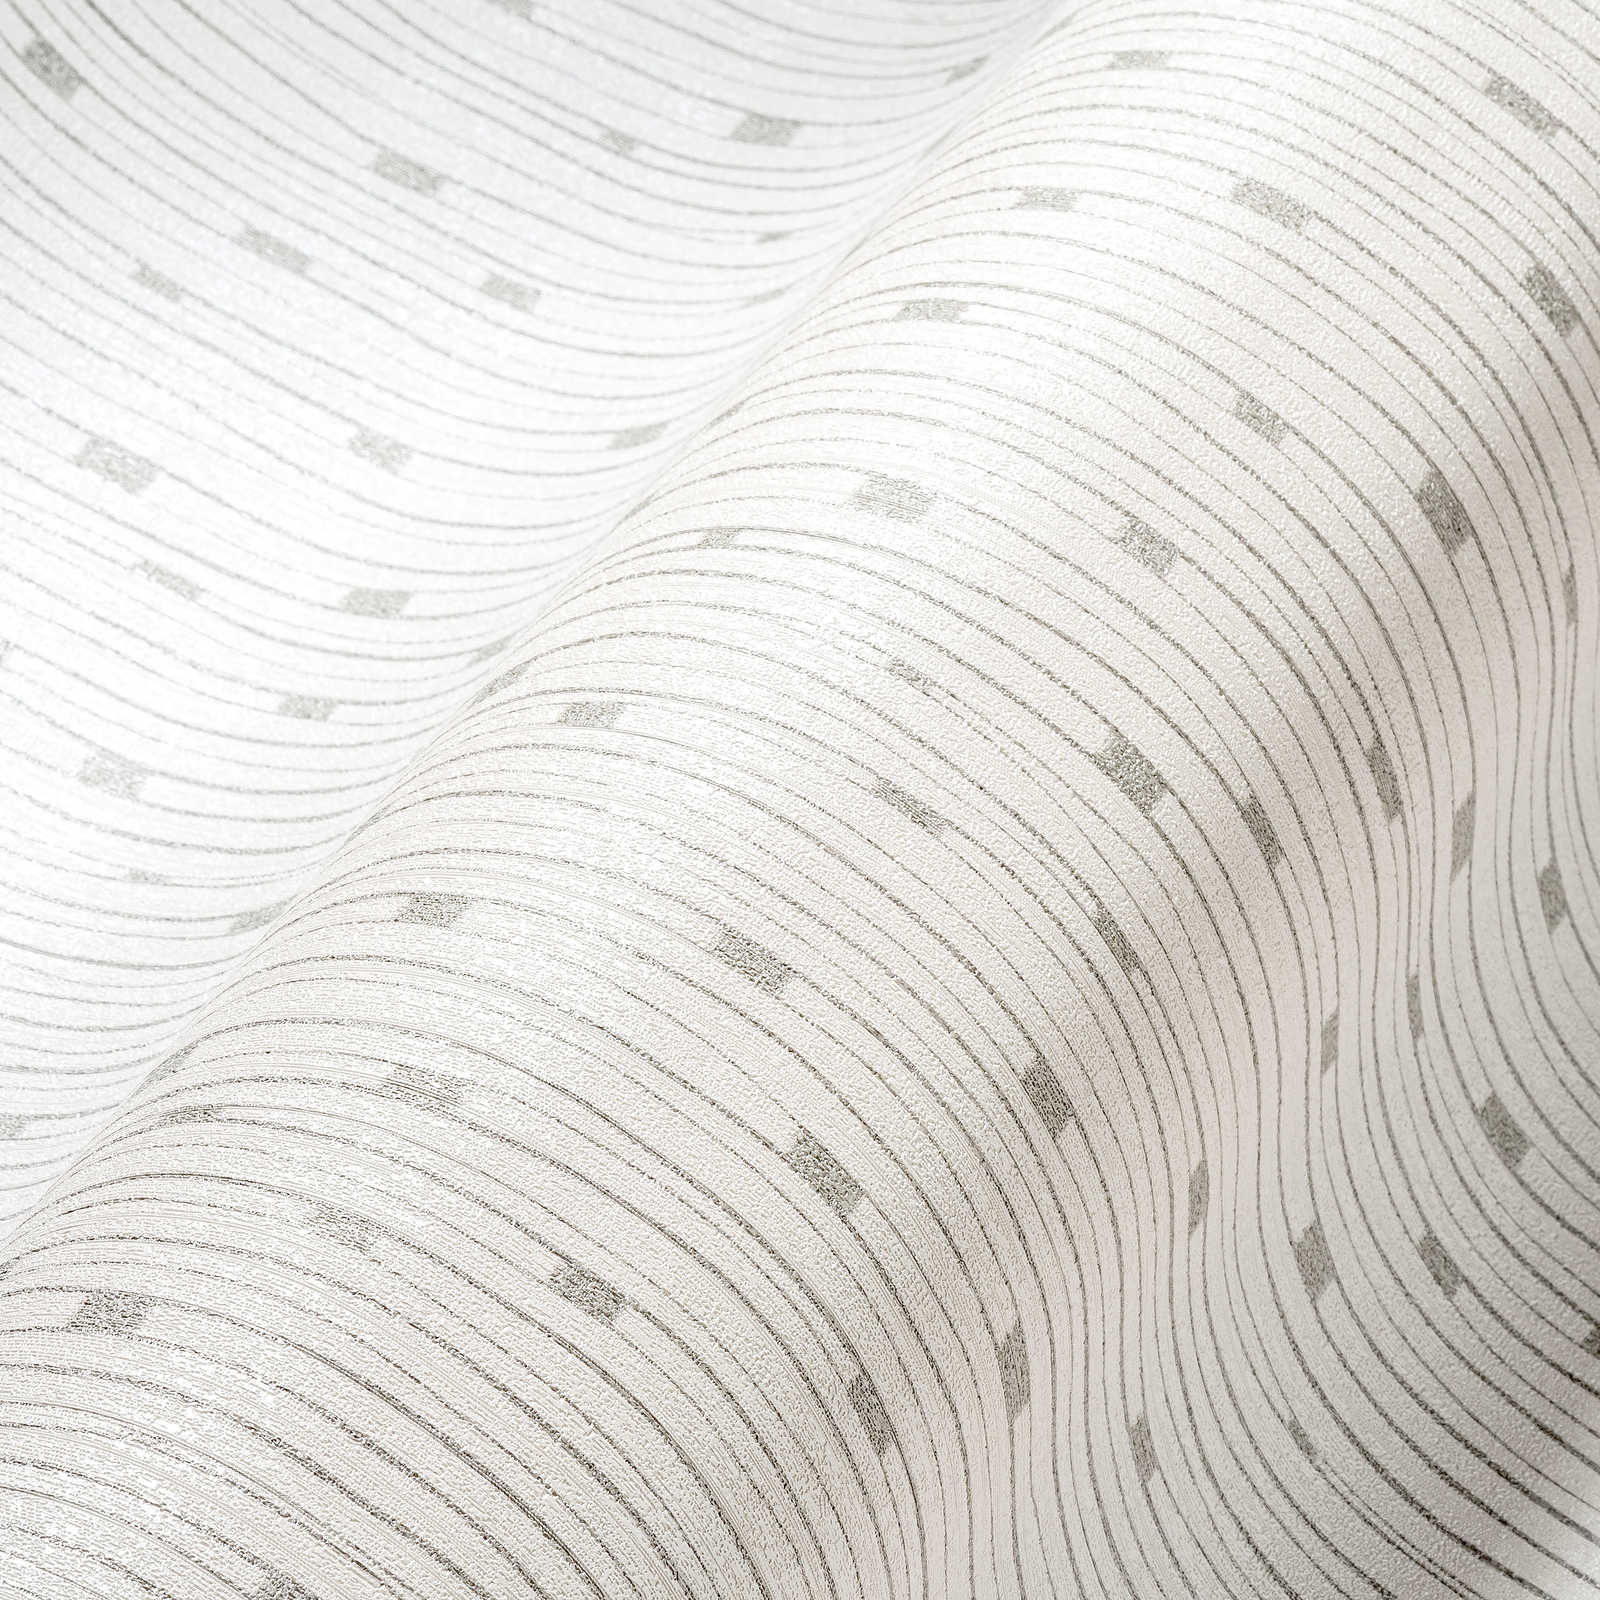             Retro Tapete 50er Jahre Linienmuster – Weiß, Metallic
        